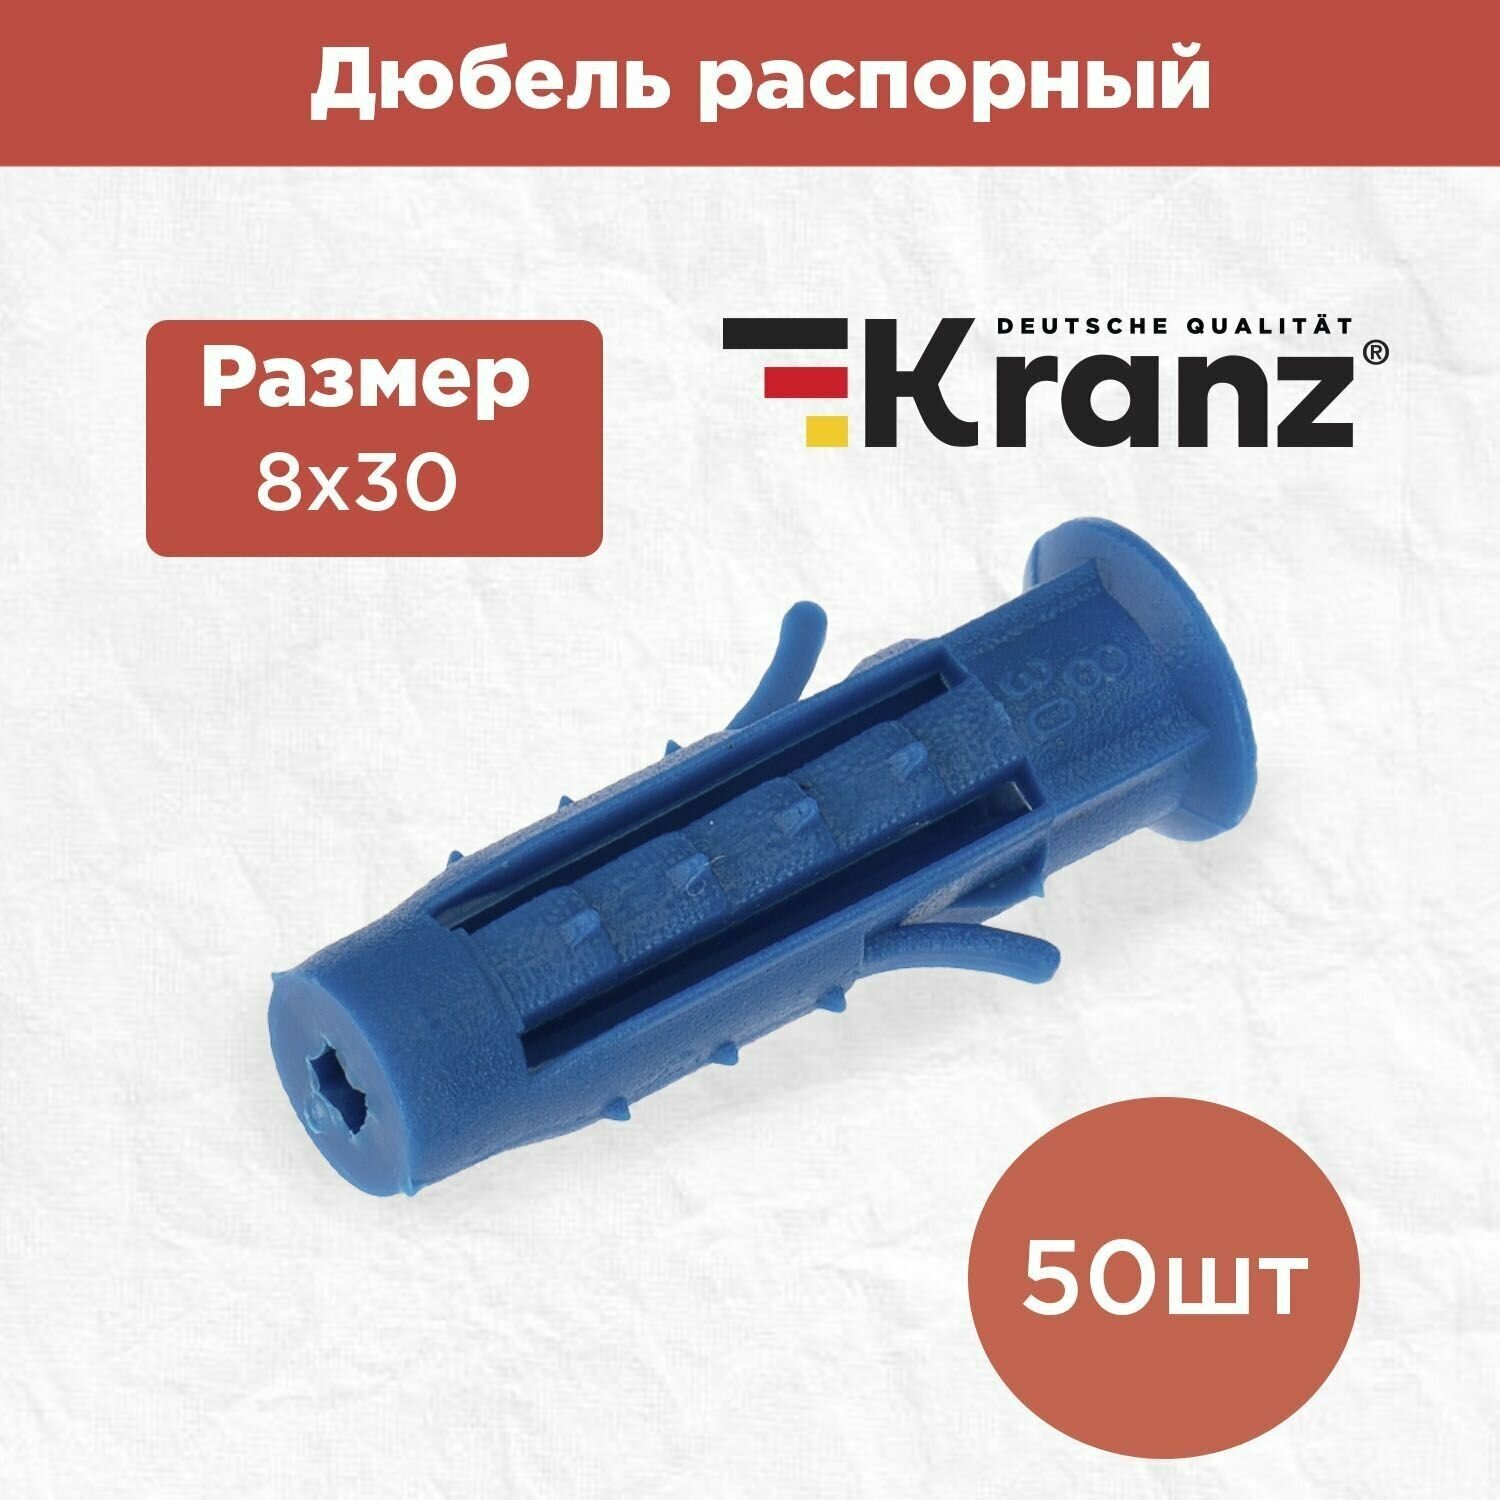 Дюбель распорный KRANZ высокопрочный 8х30 синий 50 штук в упаковке